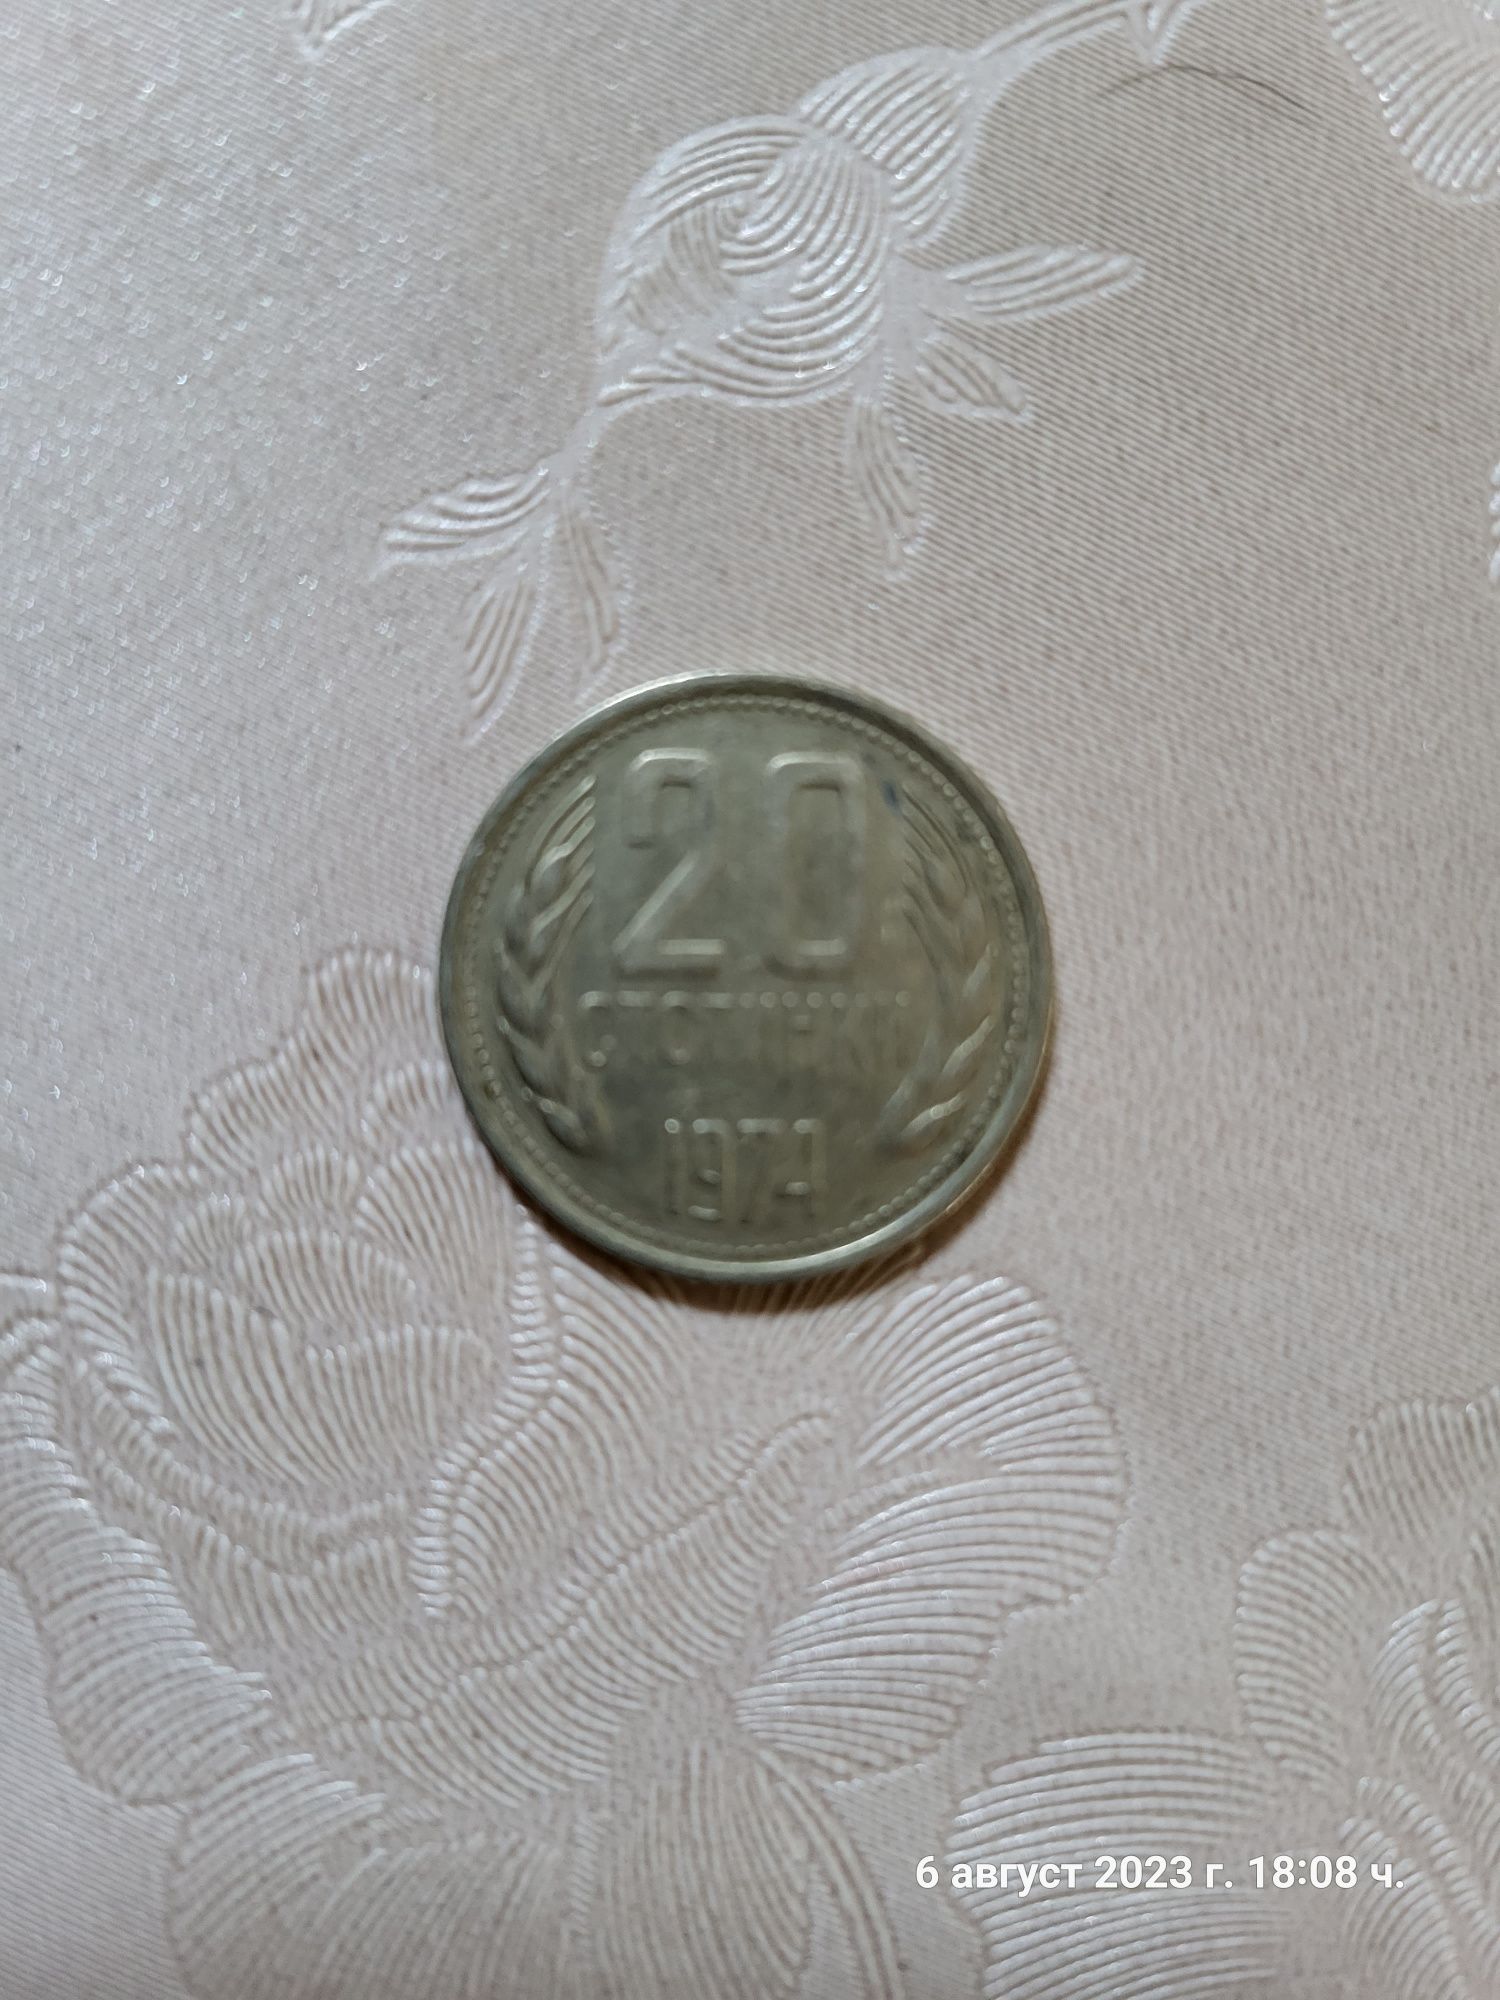 20 стотинки от 1974 година